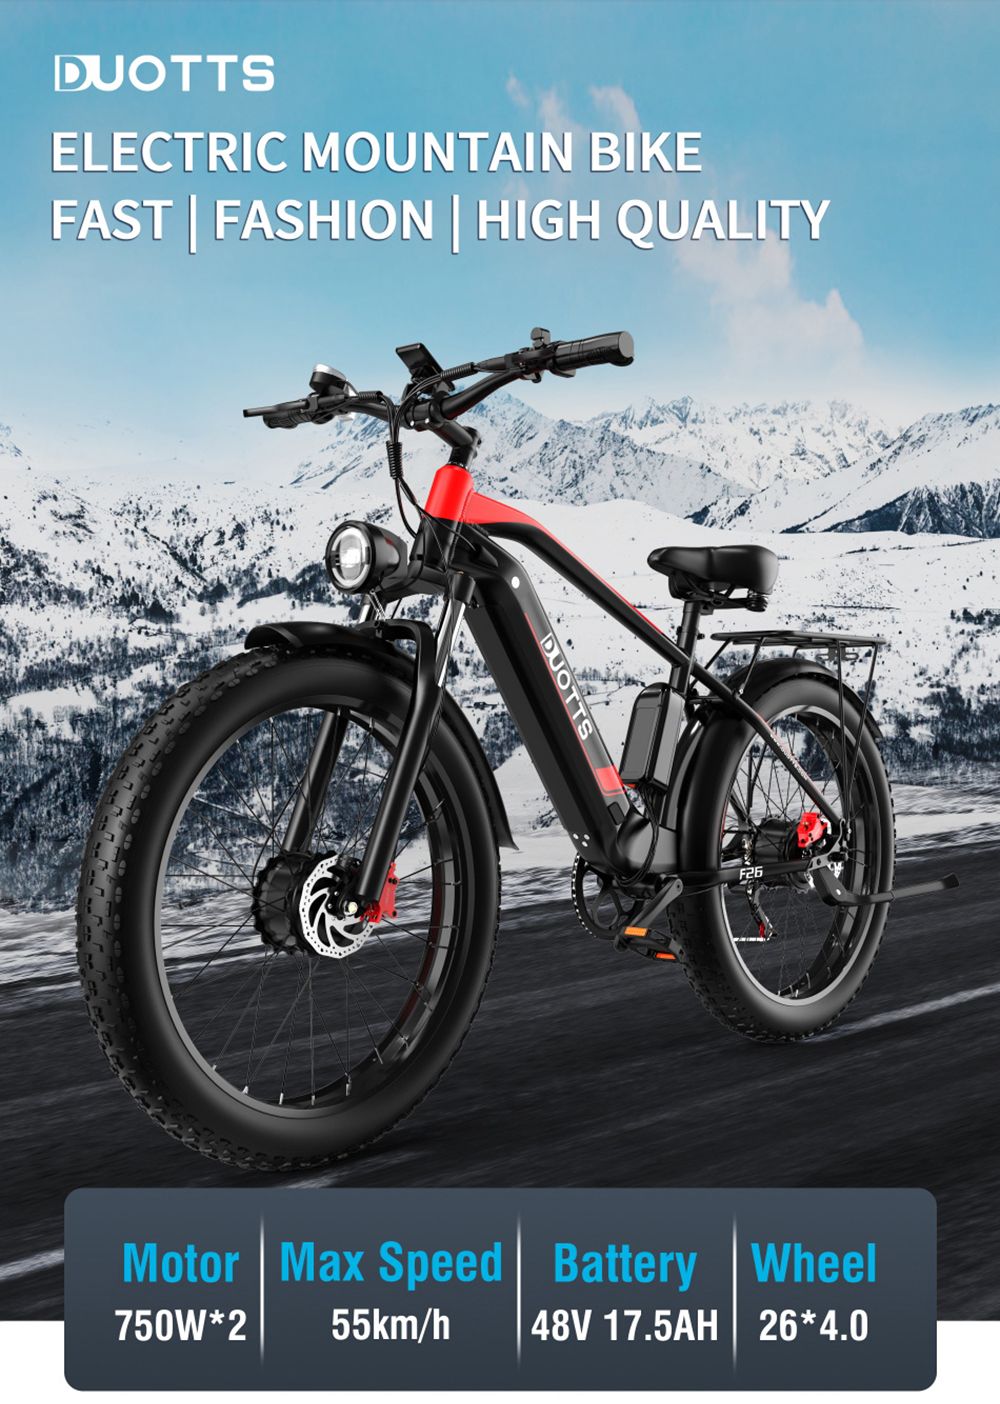 Bicicletă electrică 26 inchi DUOTTS F26 55Km/h 17,5 Ah 750W*2 Motoare duble Negru